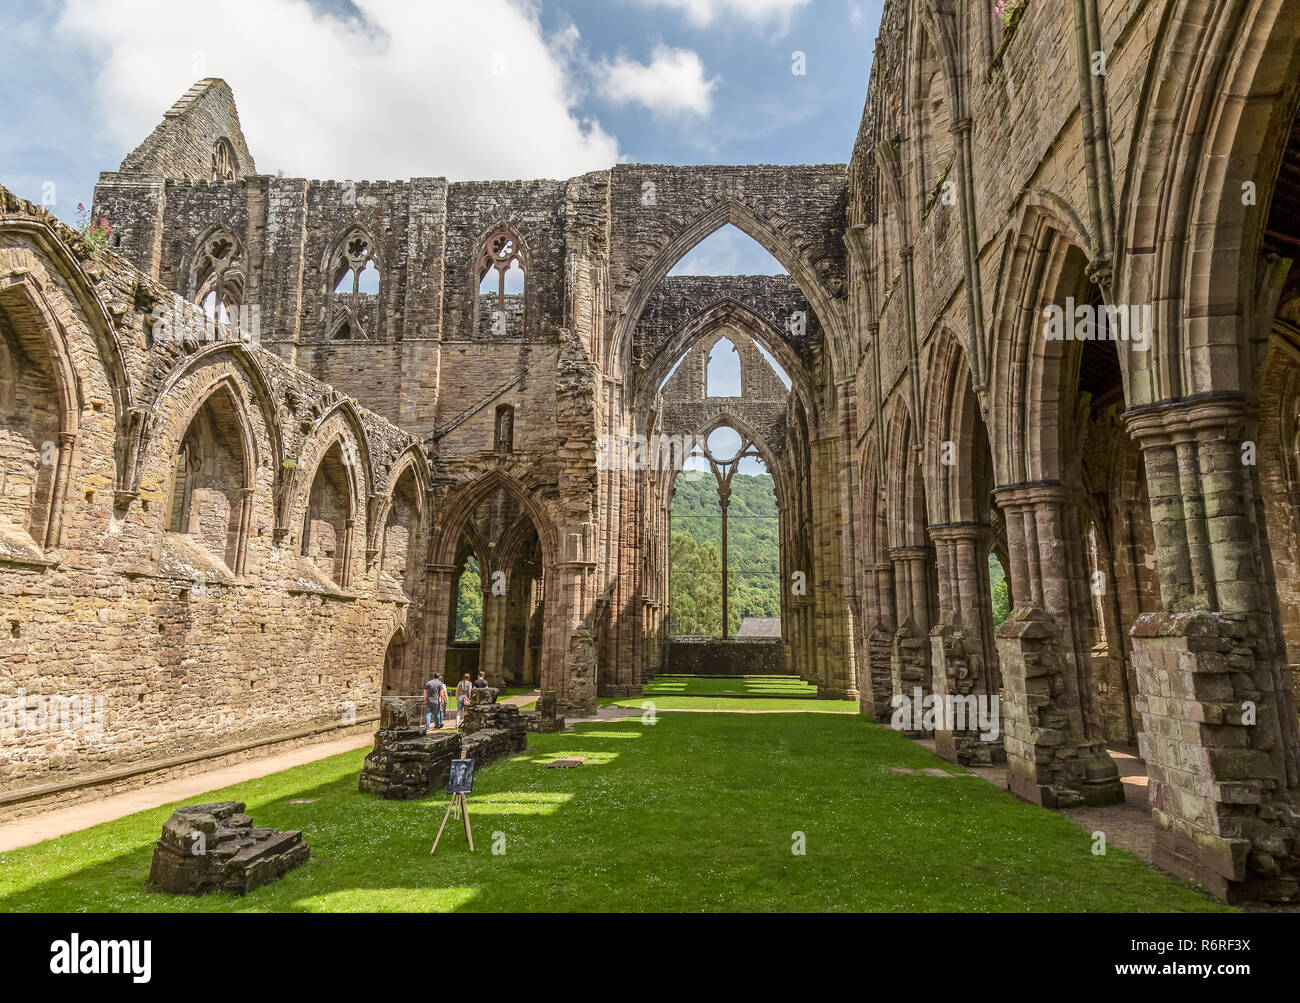 Tintern Abbey, Galles, sulle rive del fiume Wye. Fondata da Walter de Clare, signore di Chepstow, il 9 maggio 1131. La seconda abbazia cistercense in Gran Bretagna. Foto Stock